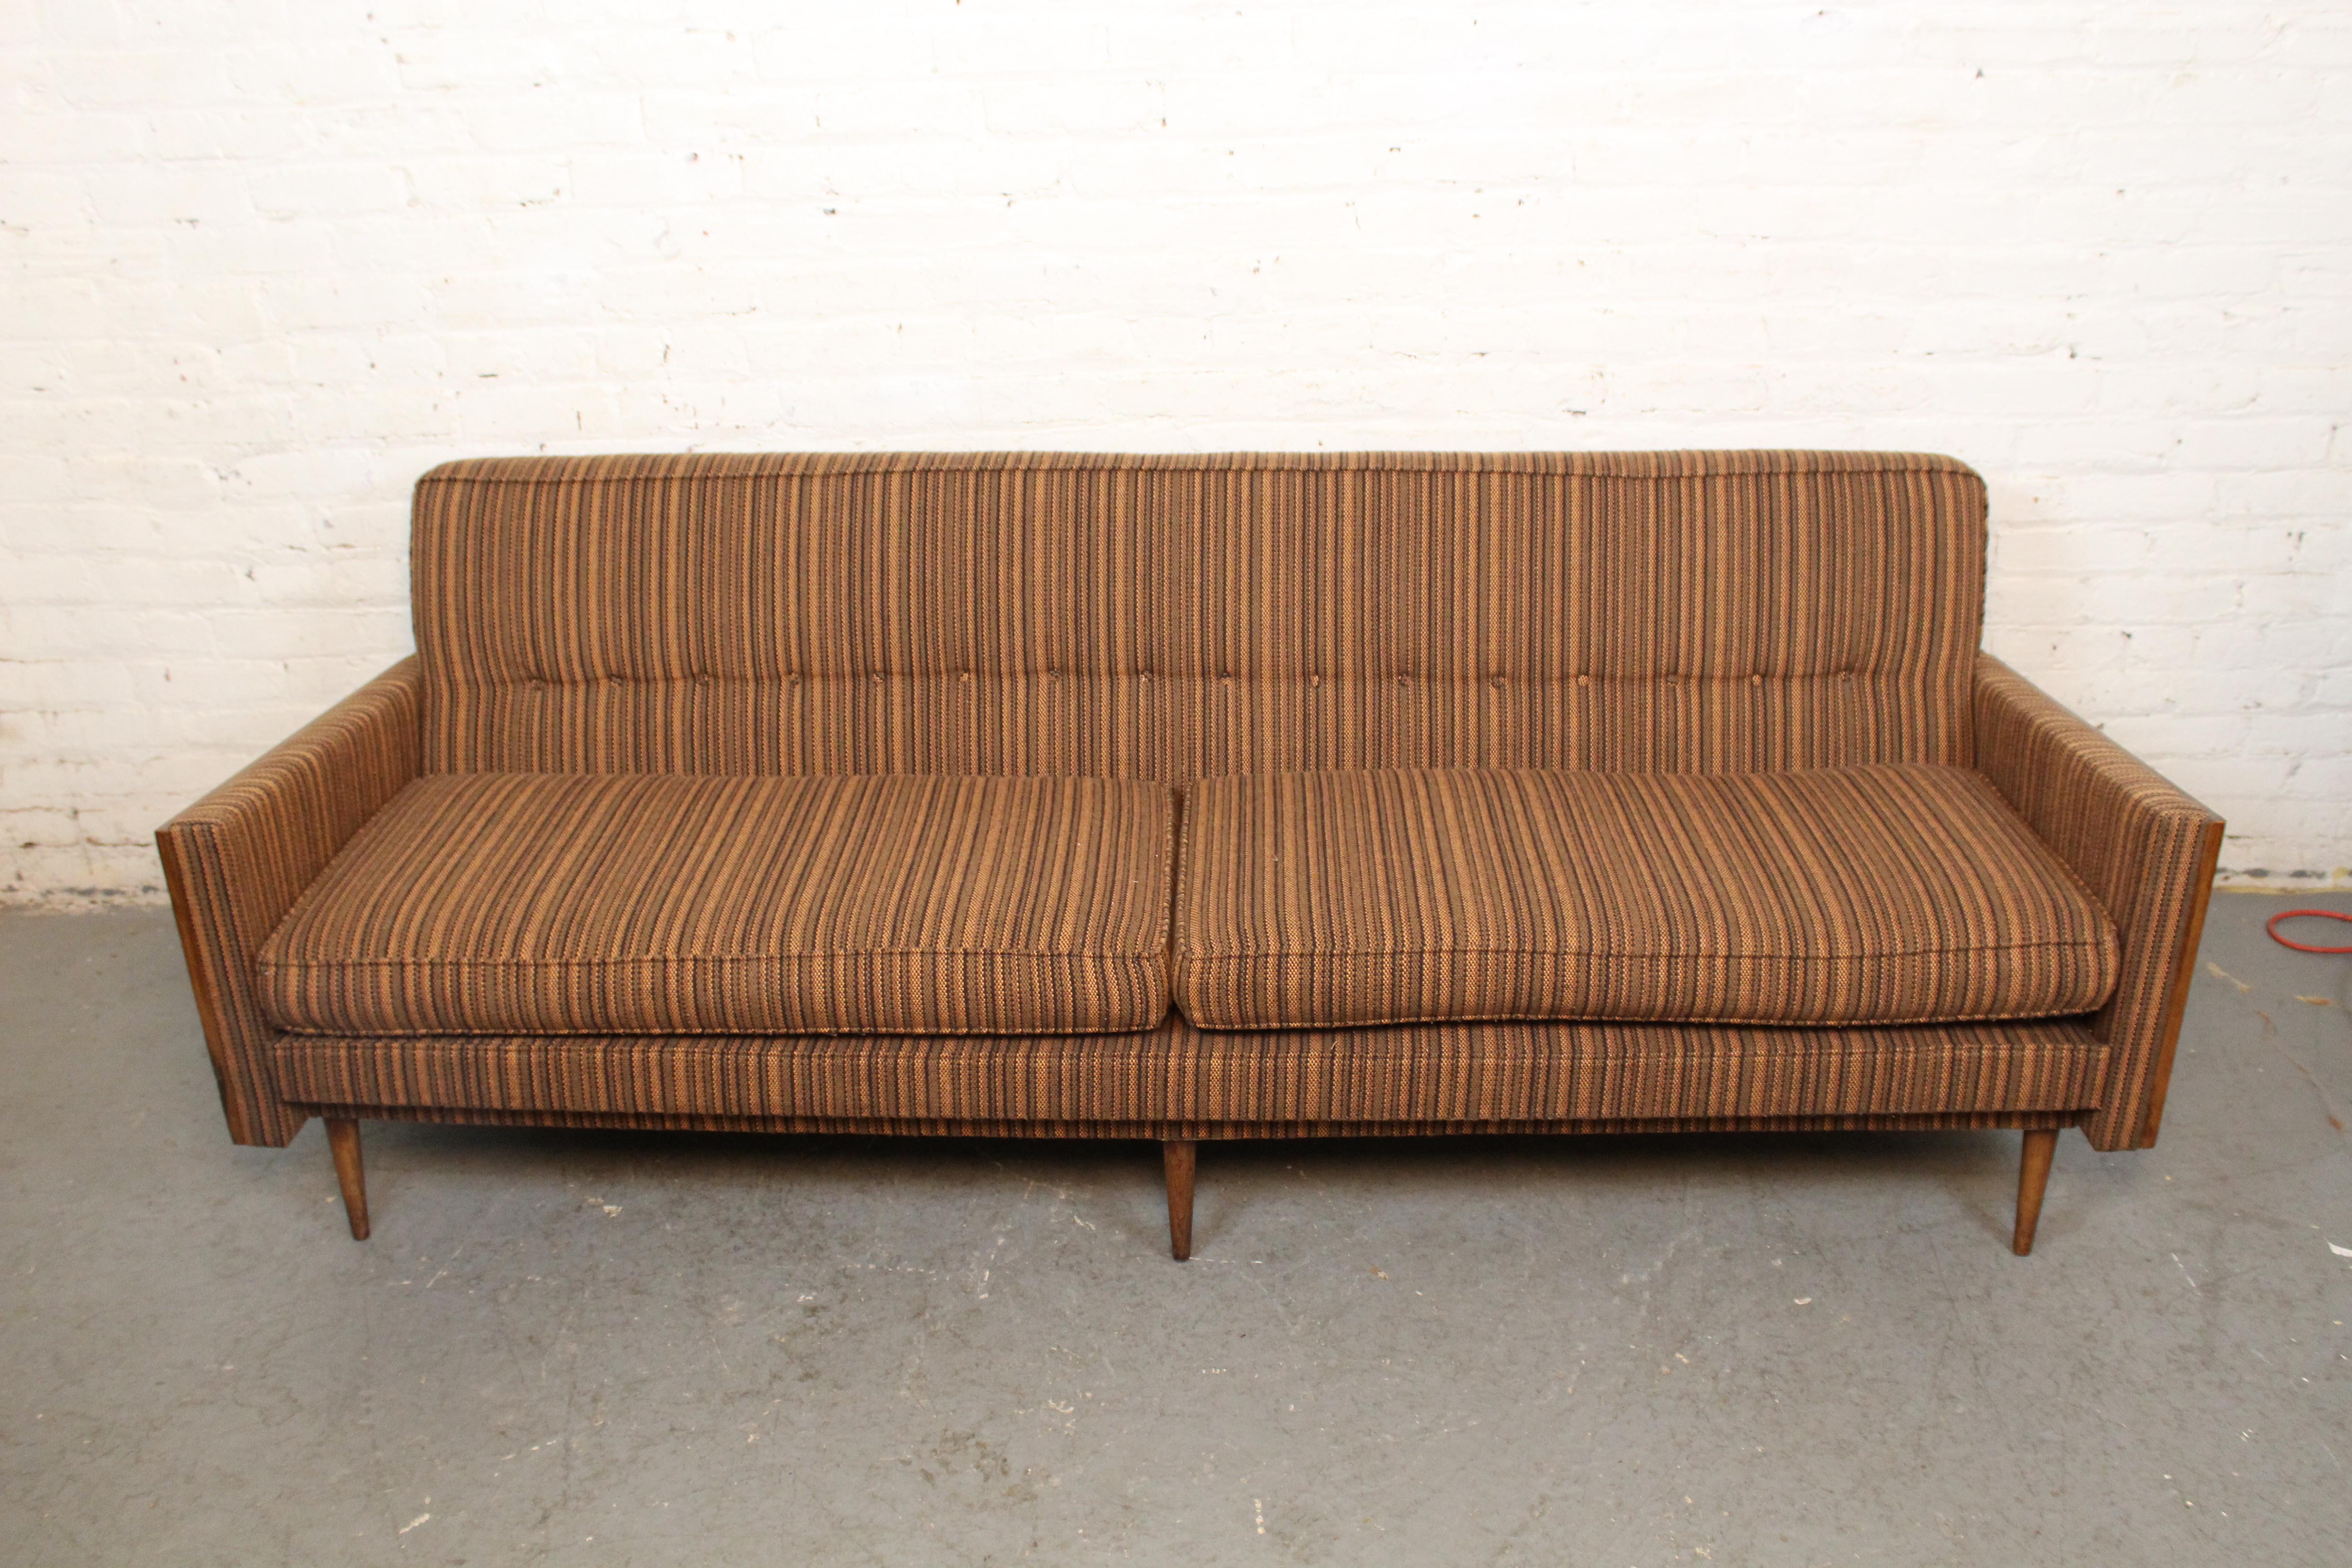 Versetzen Sie Ihr Wohnzimmer mit diesem fantastischen Sofa aus der Mitte des Jahrhunderts in eine andere Zeit! Dieses gemütliche Möbelstück in flippiger Atomzeitalter-Ästhetik zeichnet sich durch eine getuftete, gestreifte Tweed-Polsterung, eine